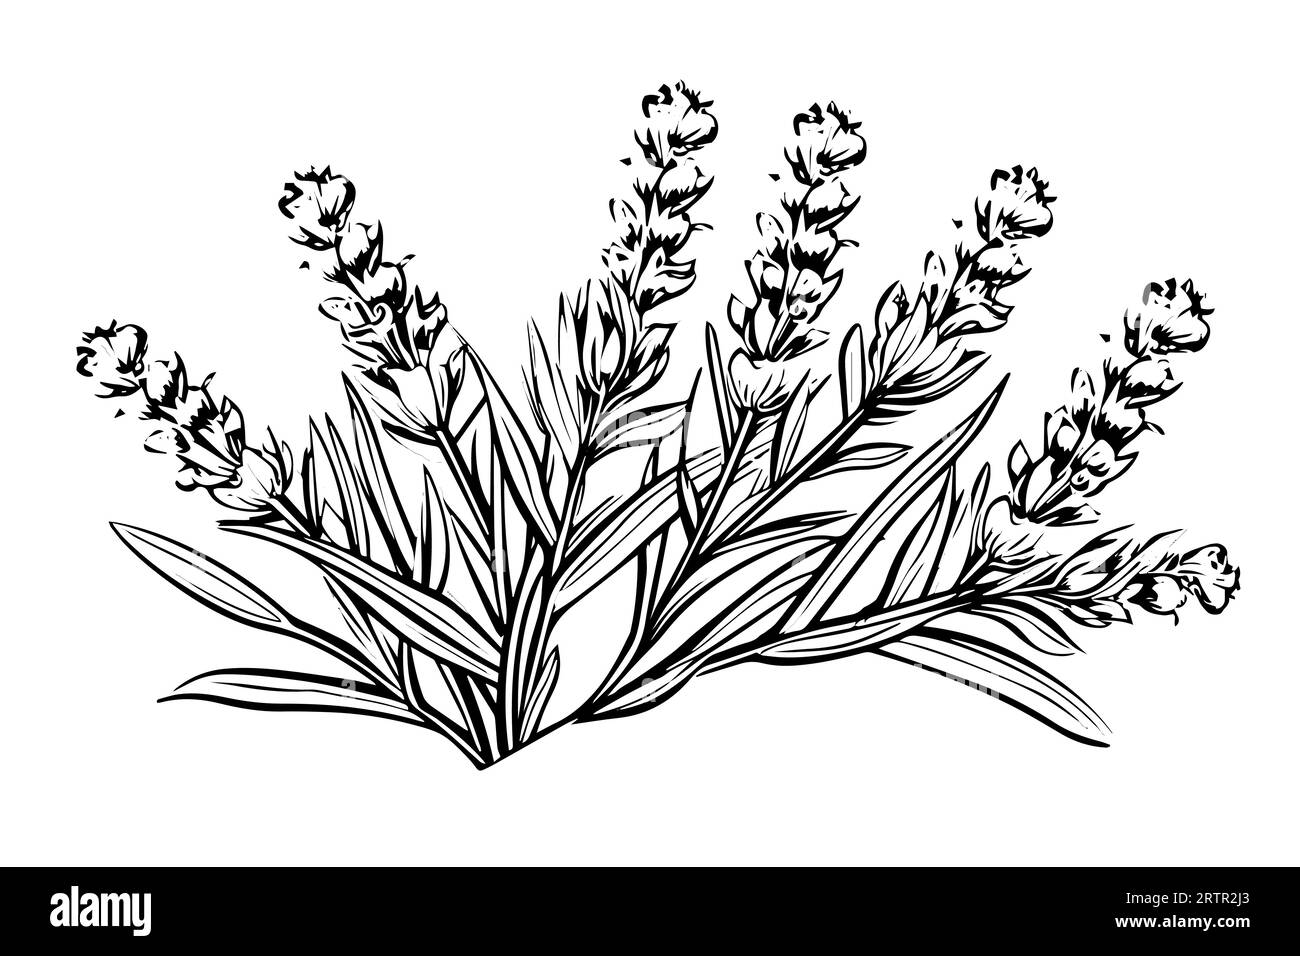 Floral botanical lavender flower hand drawn ink sketch. Vector engraving illustration. Stock Vector